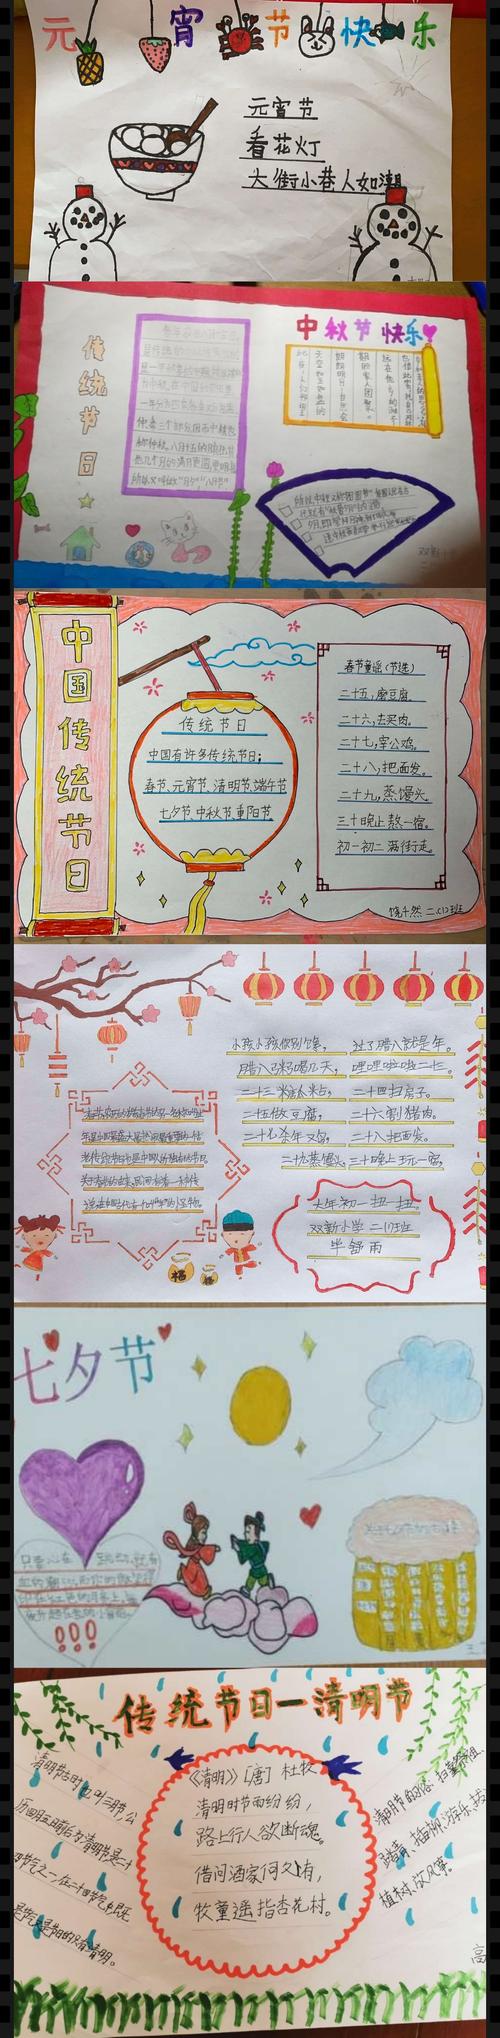 了解传统节日 弘扬中华文化 双新小学二年级一班手抄报活动